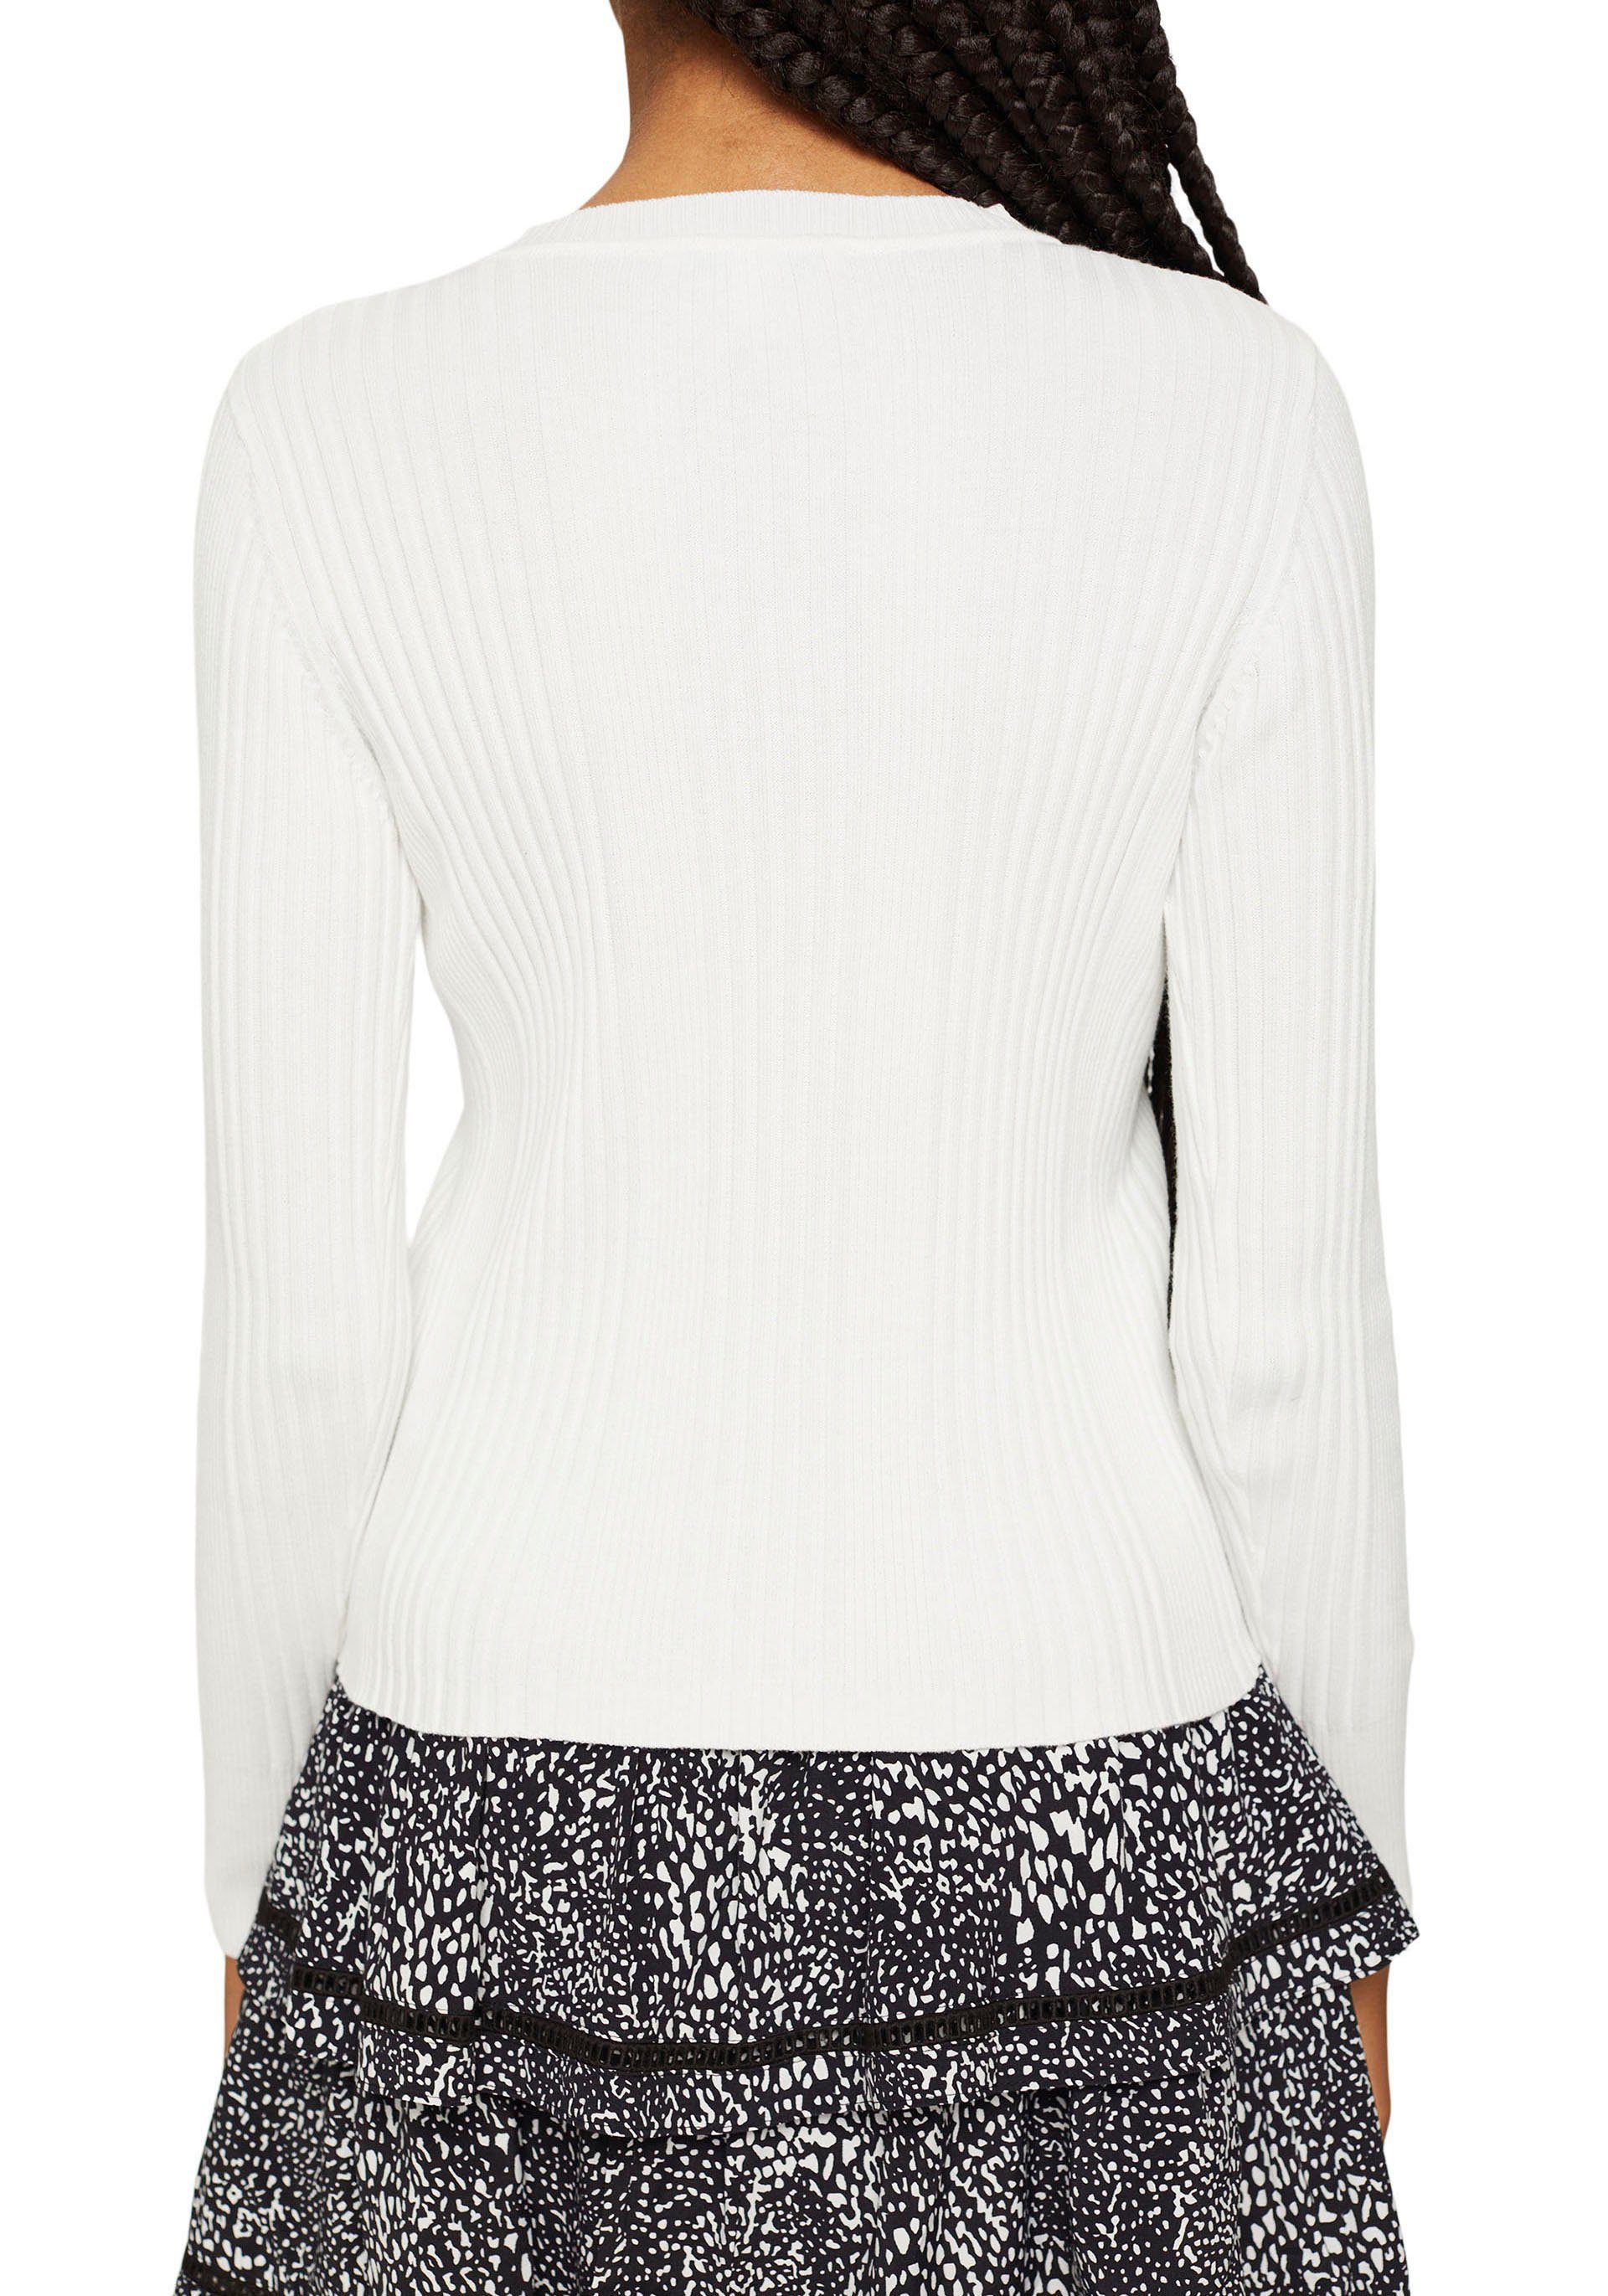 Damen Pullover edc by Esprit Strickpullover in angesagter Rippstrickstruktur